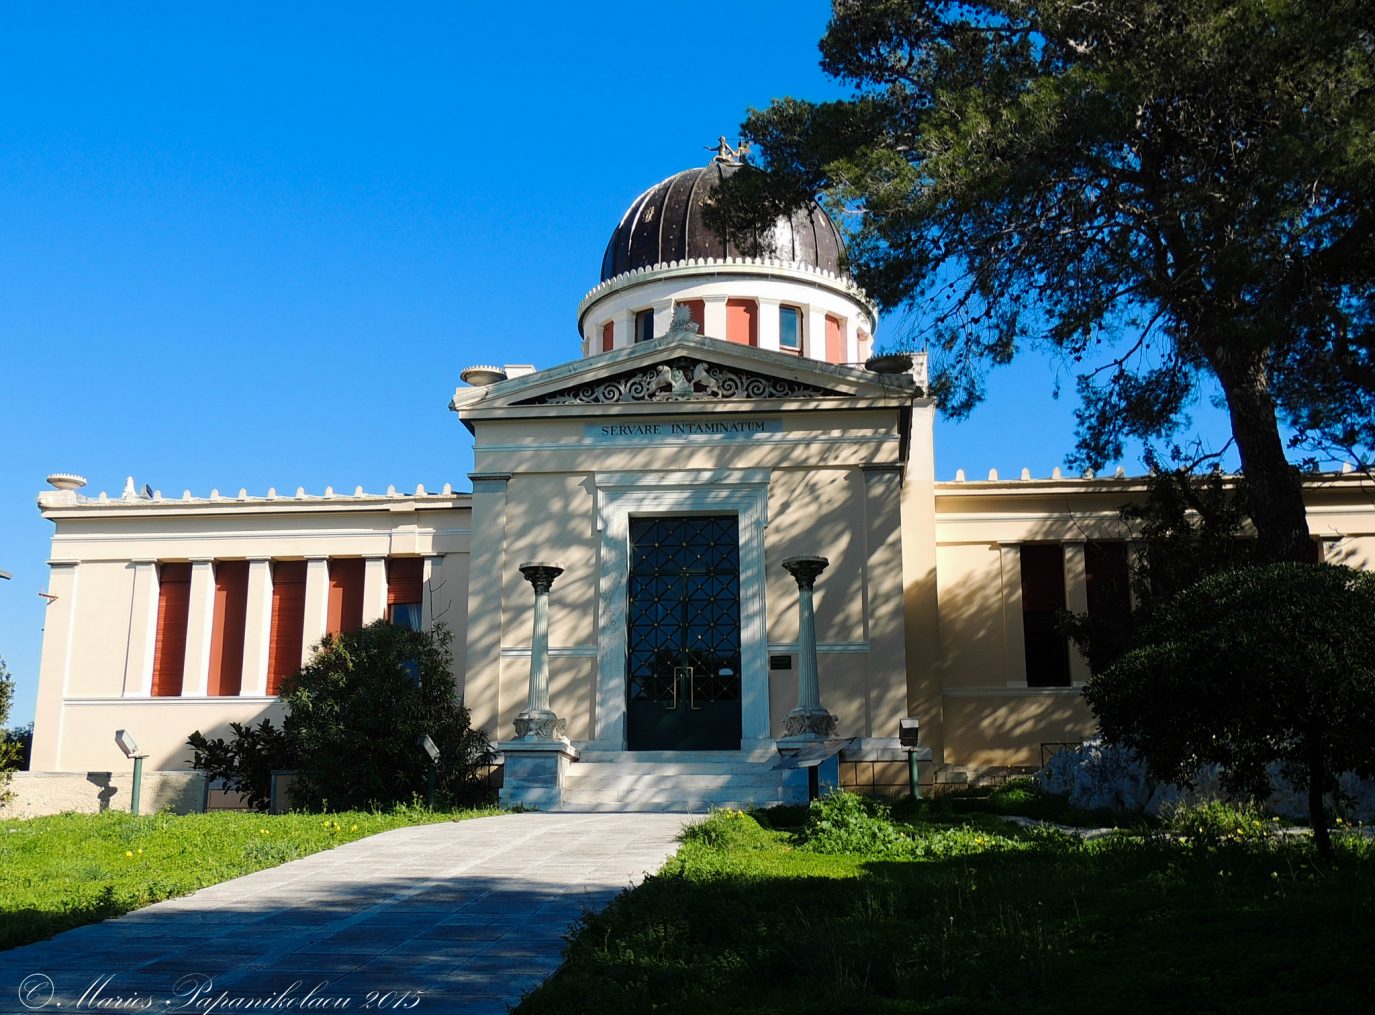 Εργασία στο Εθνικό Αστεροσκοπείο Αθηνών - Τα προσόντα και η καταληκτική ημερομηνία αίτησης 